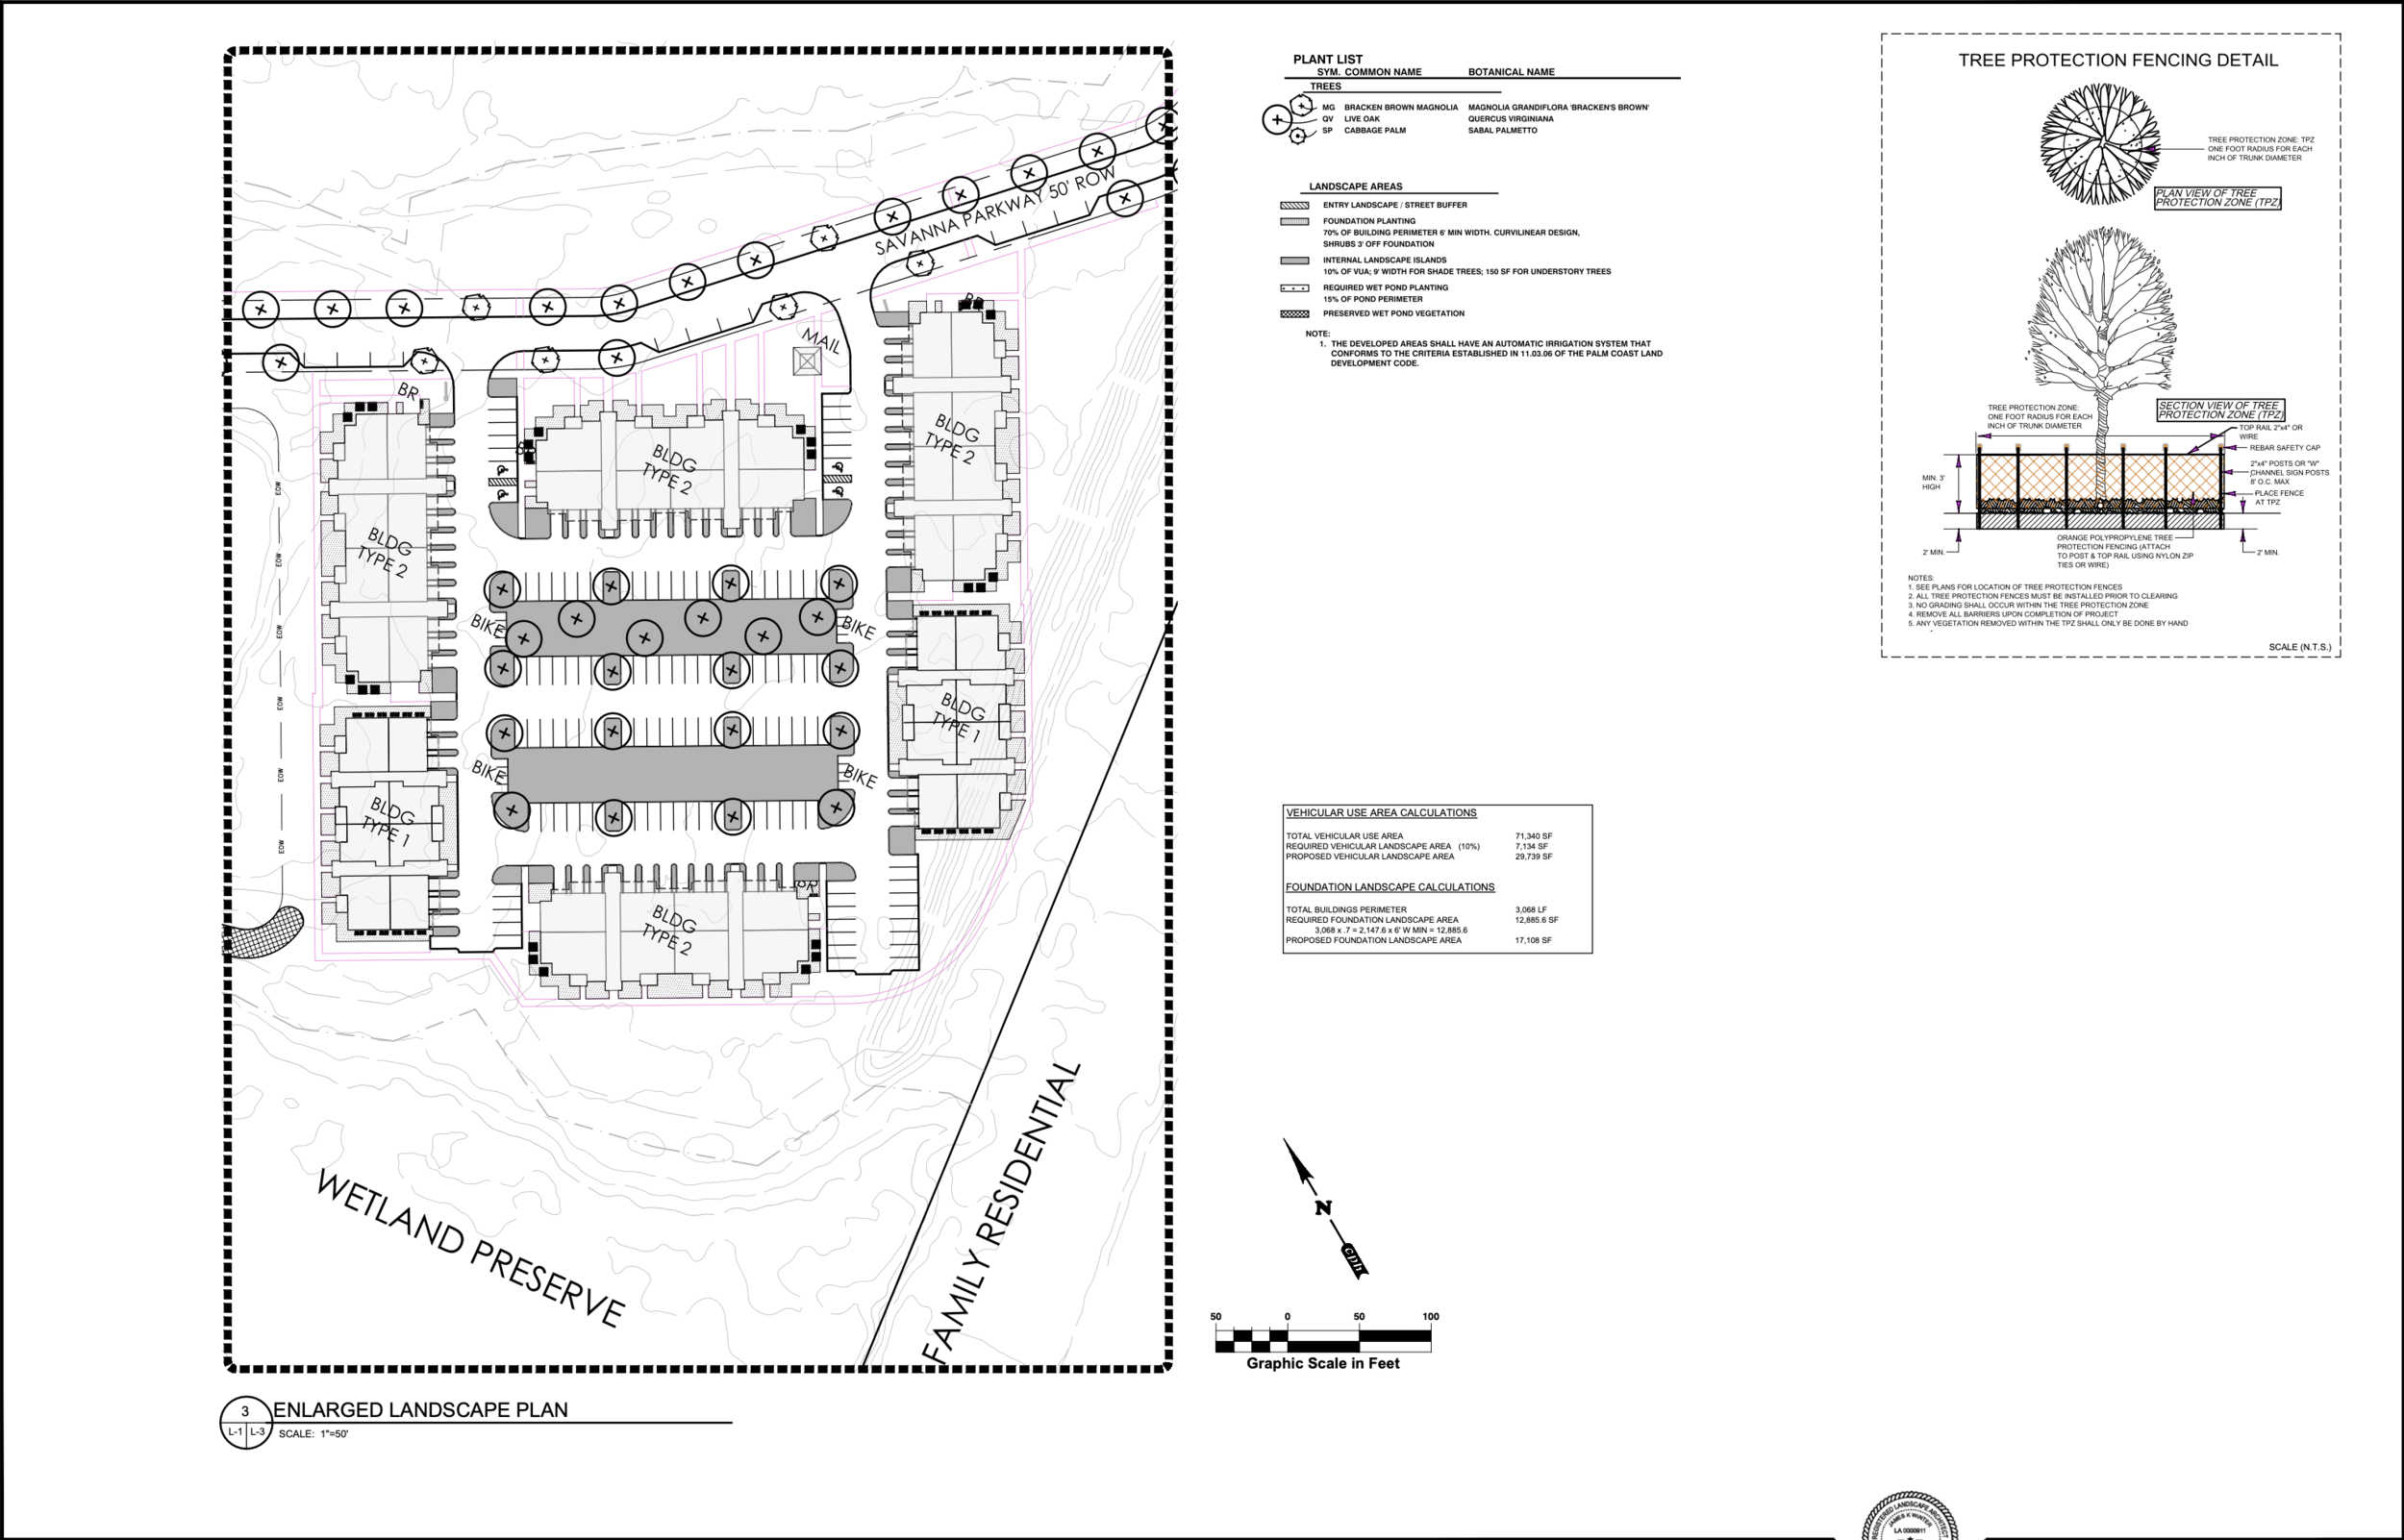 05 - Aviara Palm Coast - Site Plan.png